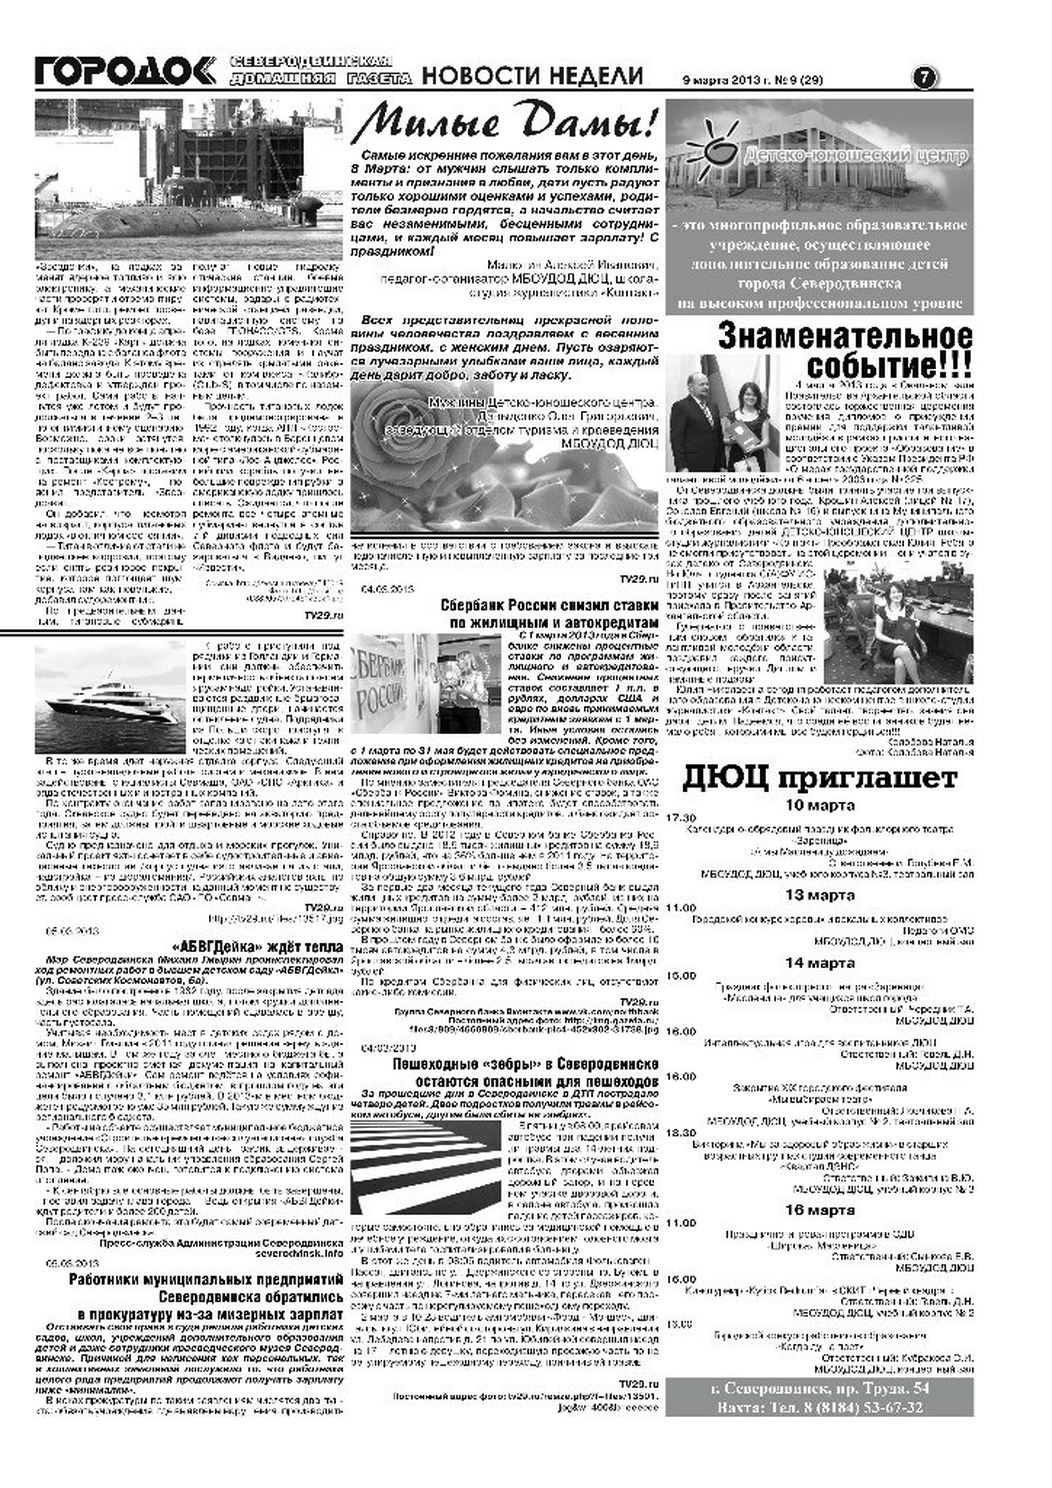 Городок плюс, выпуск номер 9 от 09 марта 2013 года, страница 7.